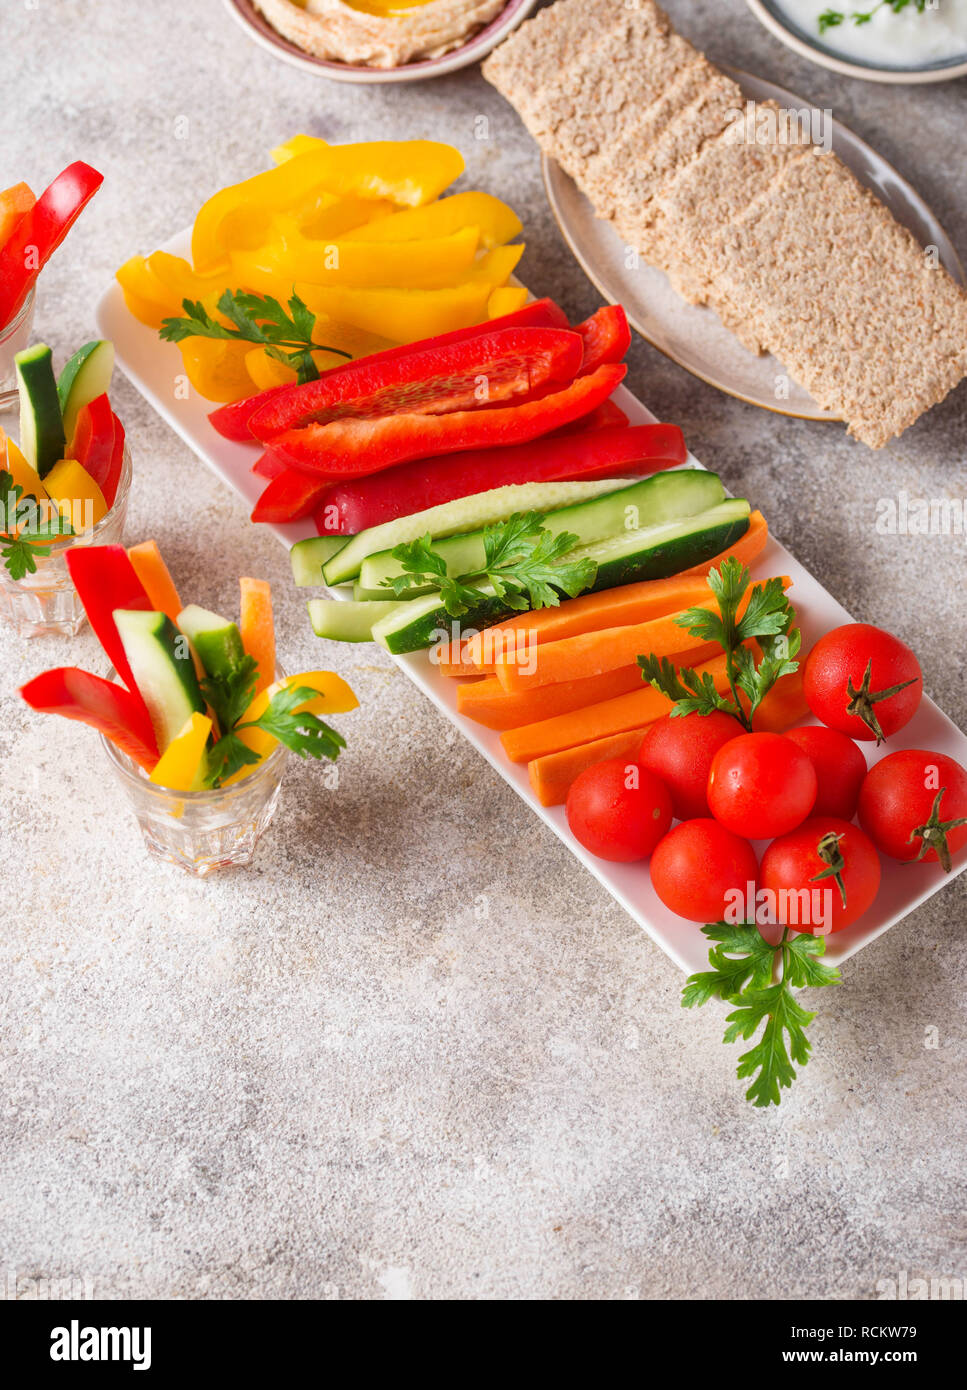 Gesunde Snacks. Gemüse und hummus Stockfoto